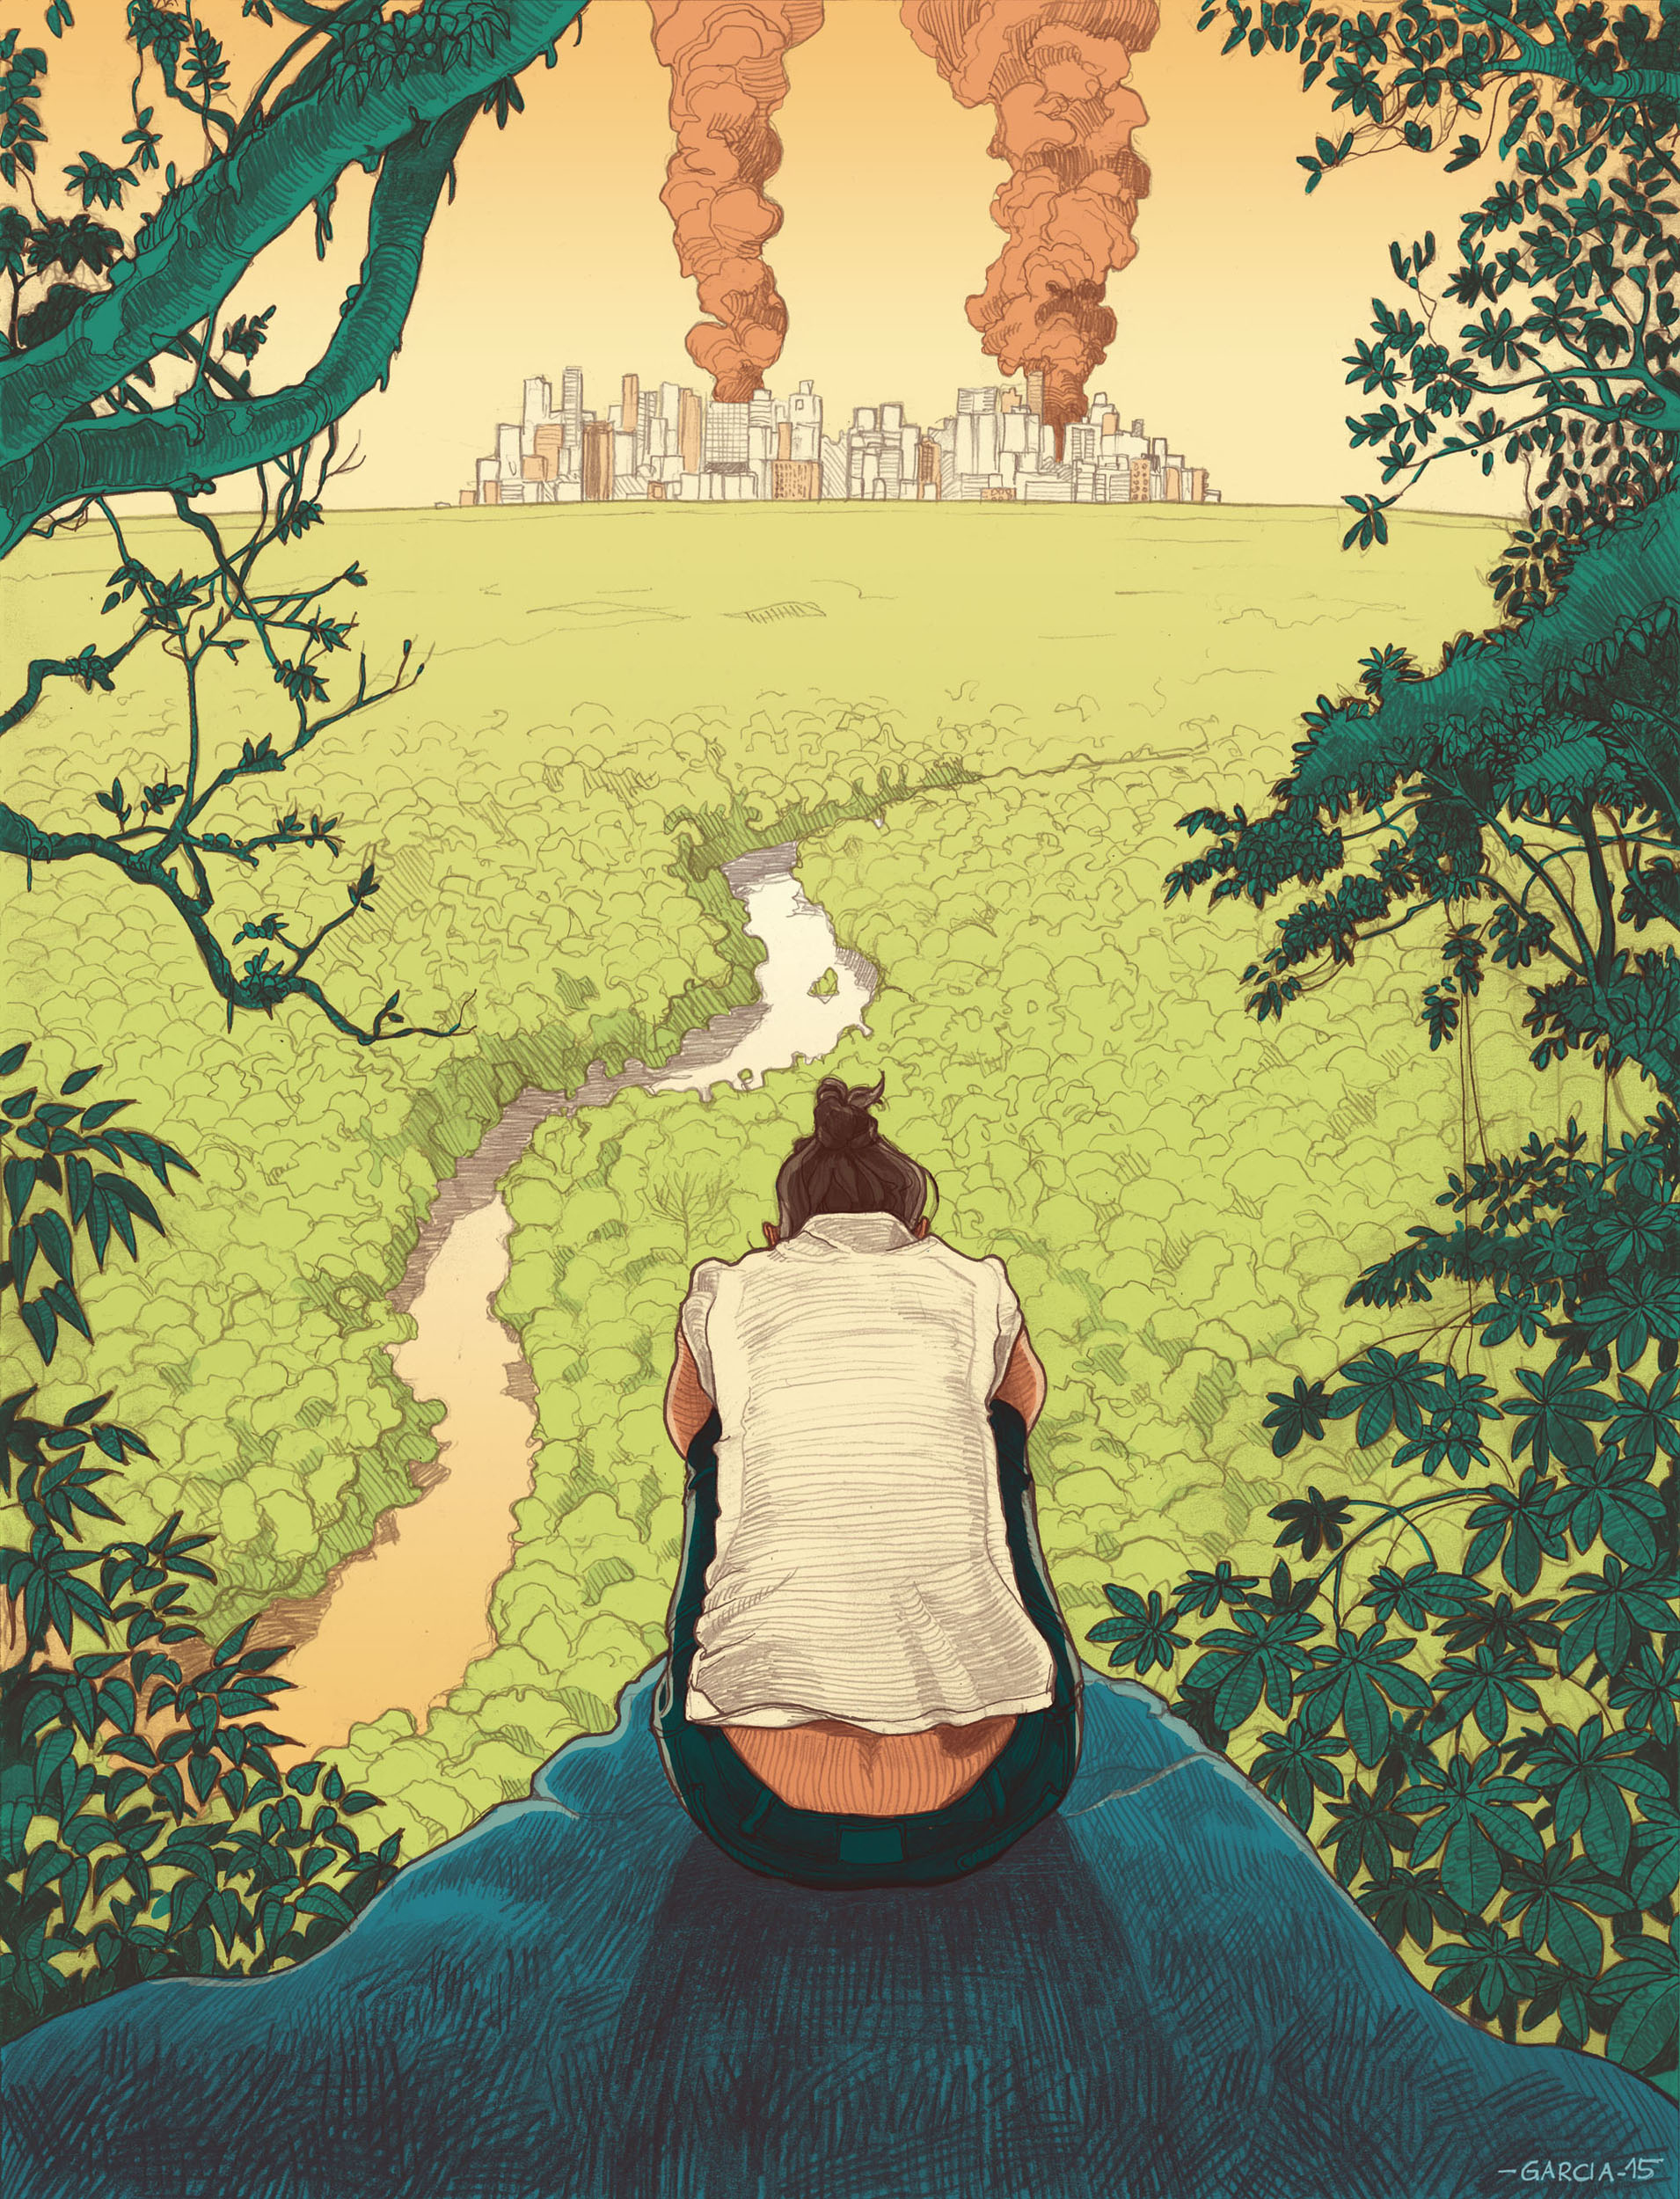 Daniel Garcia Arte Ilustracao Super Interessante Apoclaipse Distopia Gold Jungle Brazil 01